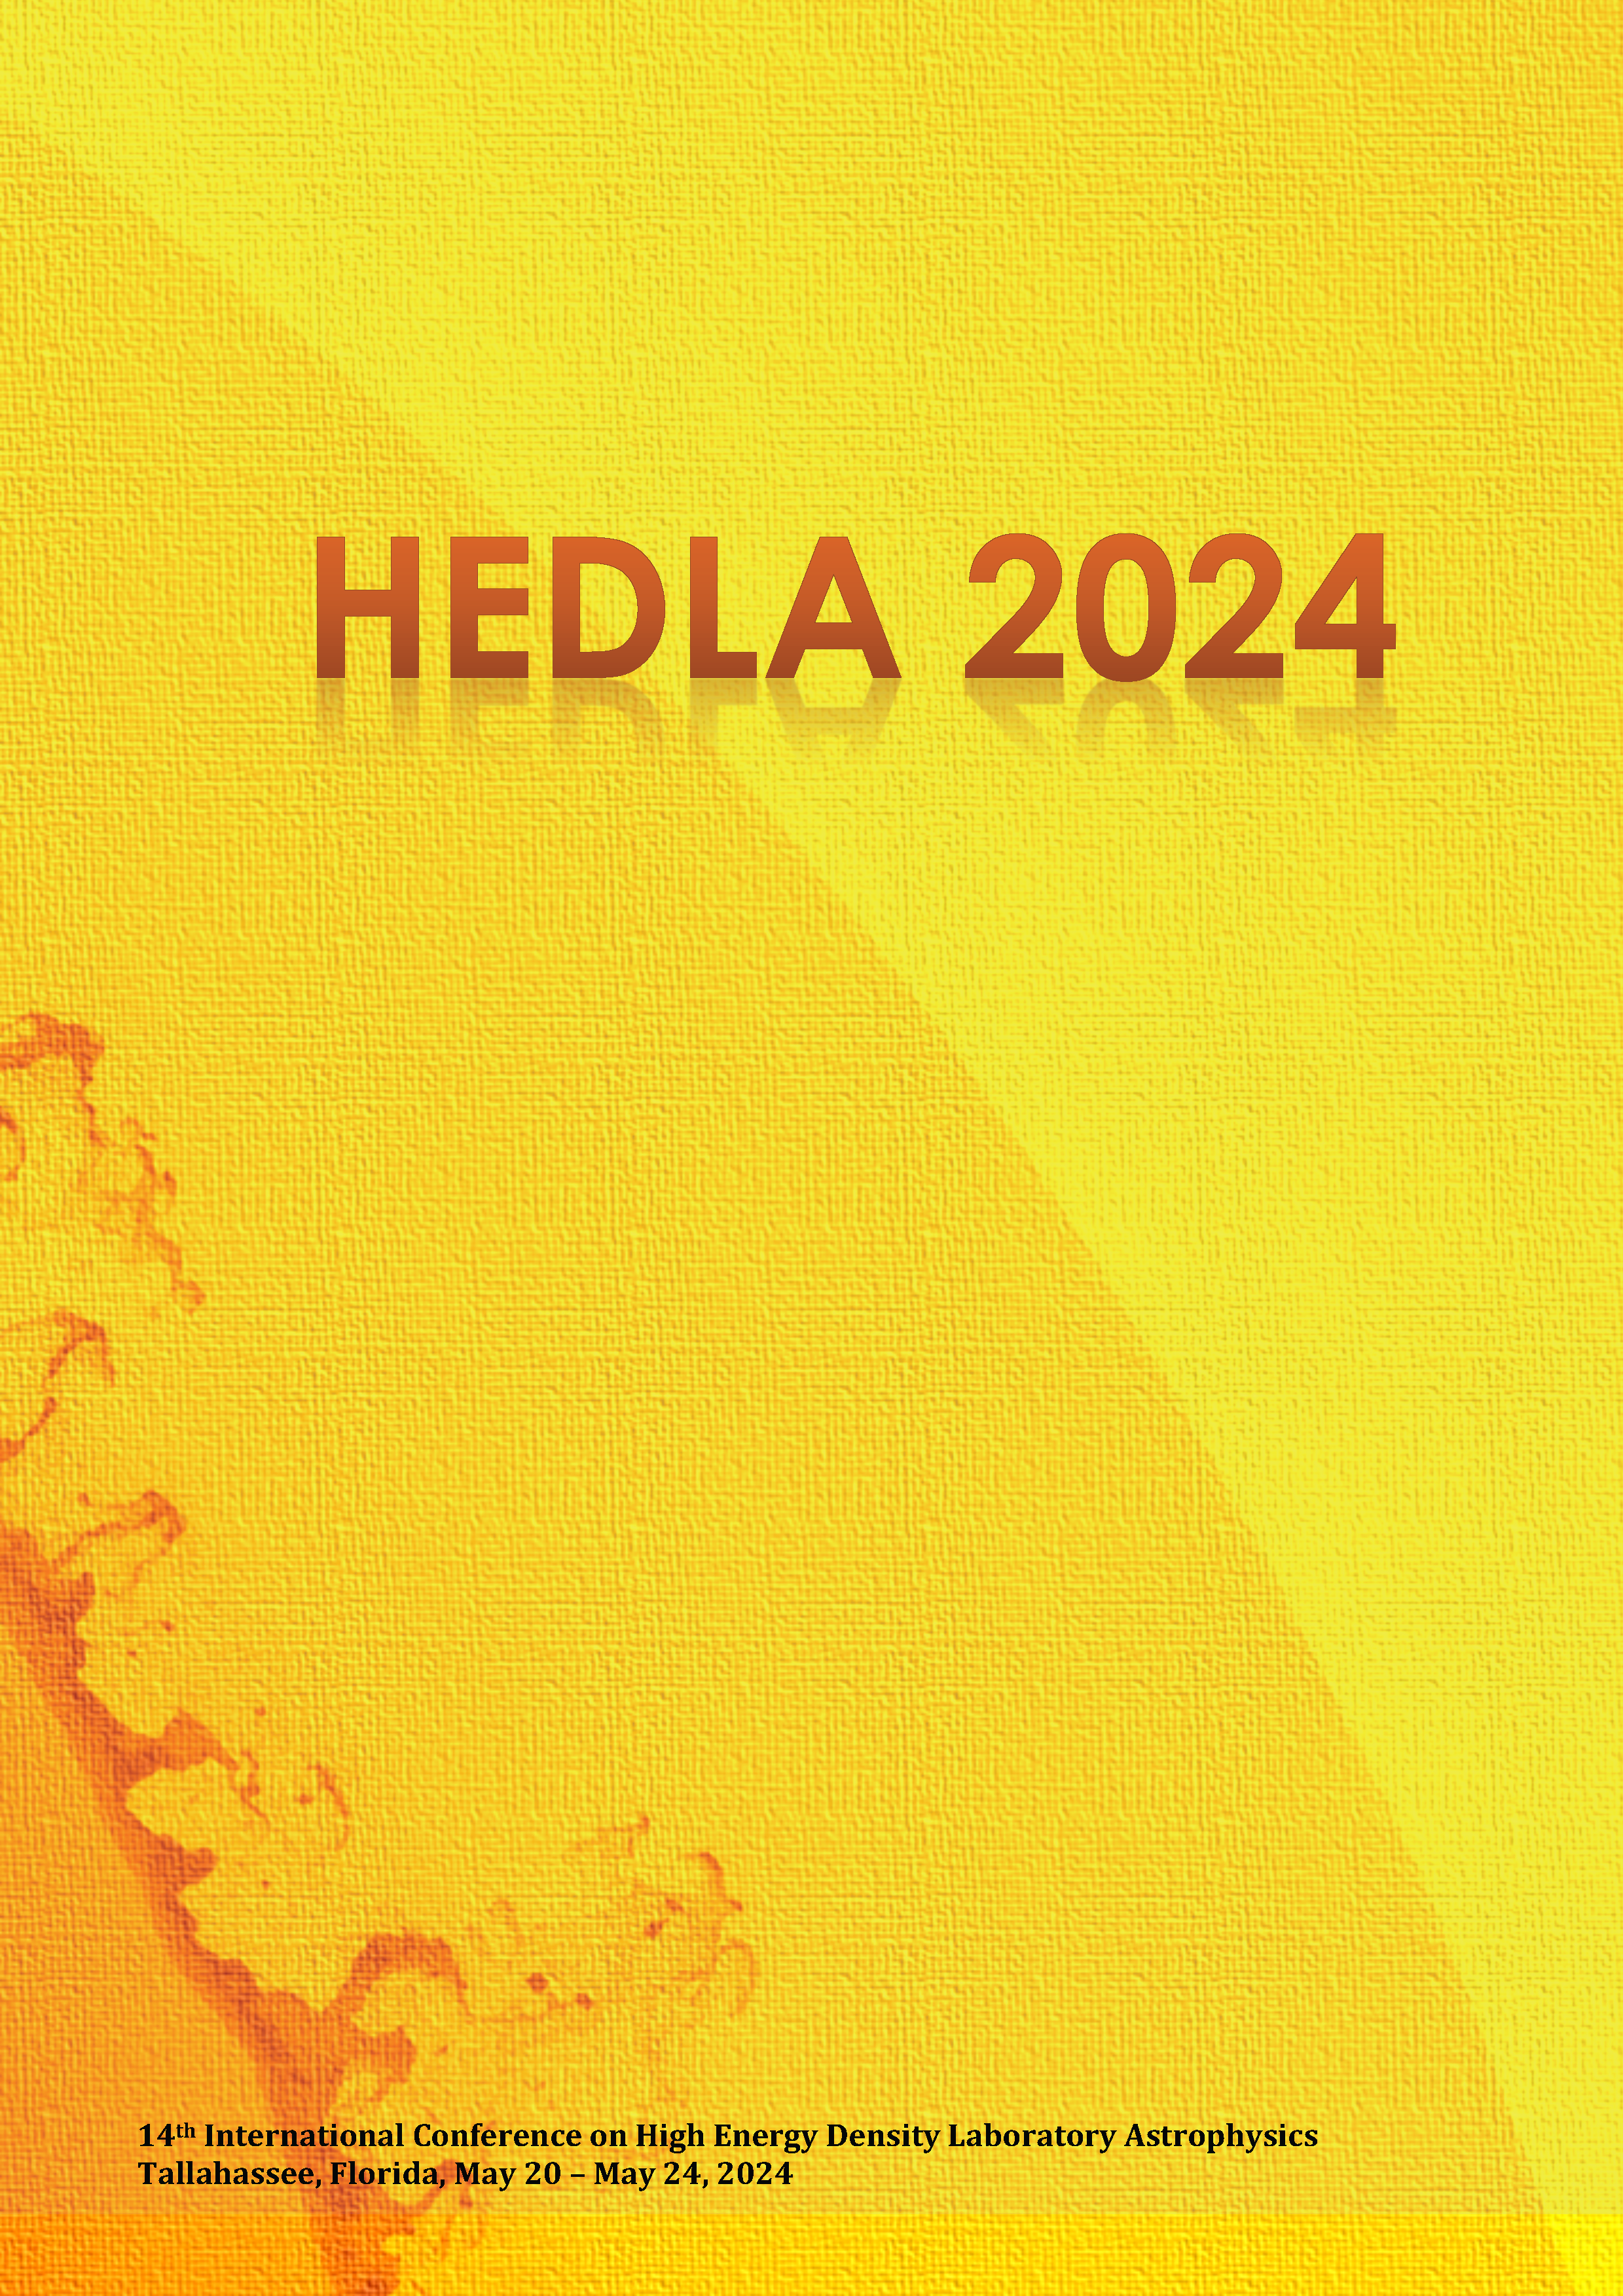 HEDLA2024 booklet